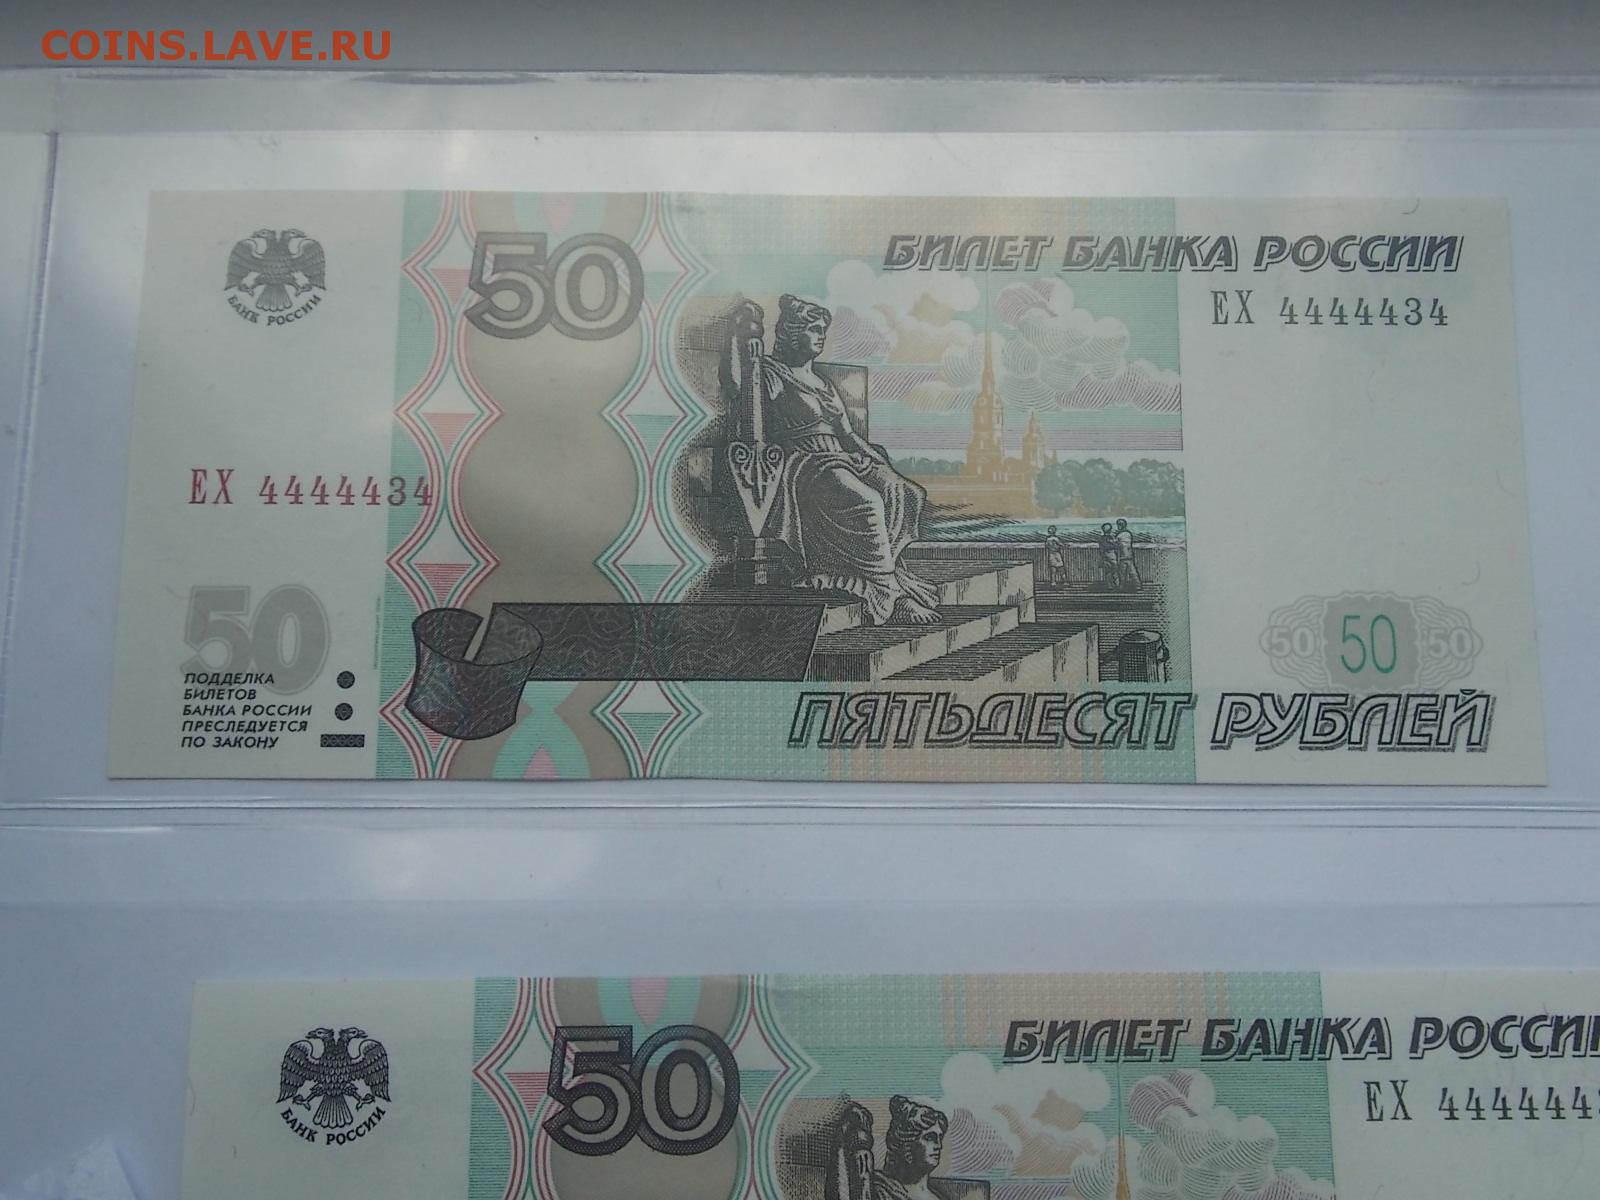 5000 рублей 50. 50 Рублей билет банка приколов. Билет банка приколов 5000. 50 Рублей распечатать. Банка прикола деньги 50 рублей.